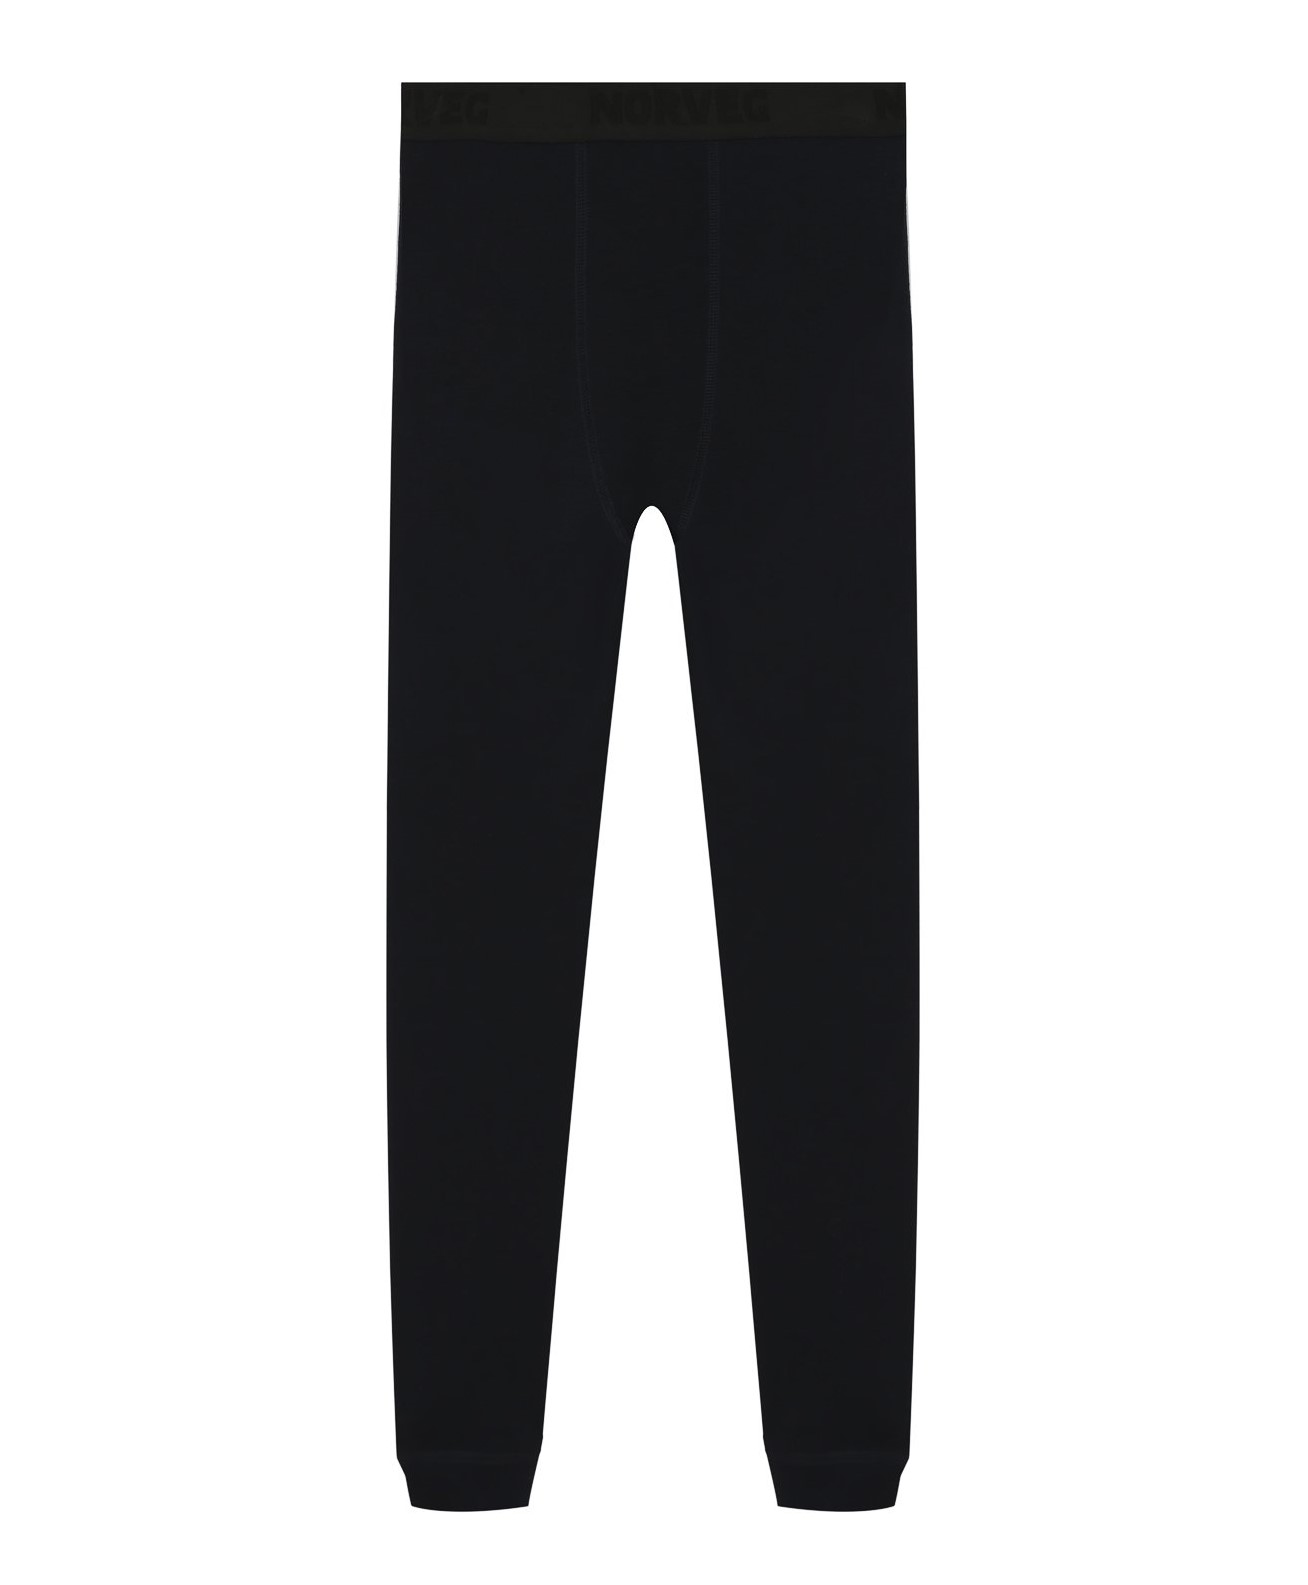 Термобелье брюки для мальчиков Norveg Soft Teens Jr: купить в Иркутске поцене 3799.00 в интернет-магазине Фанат